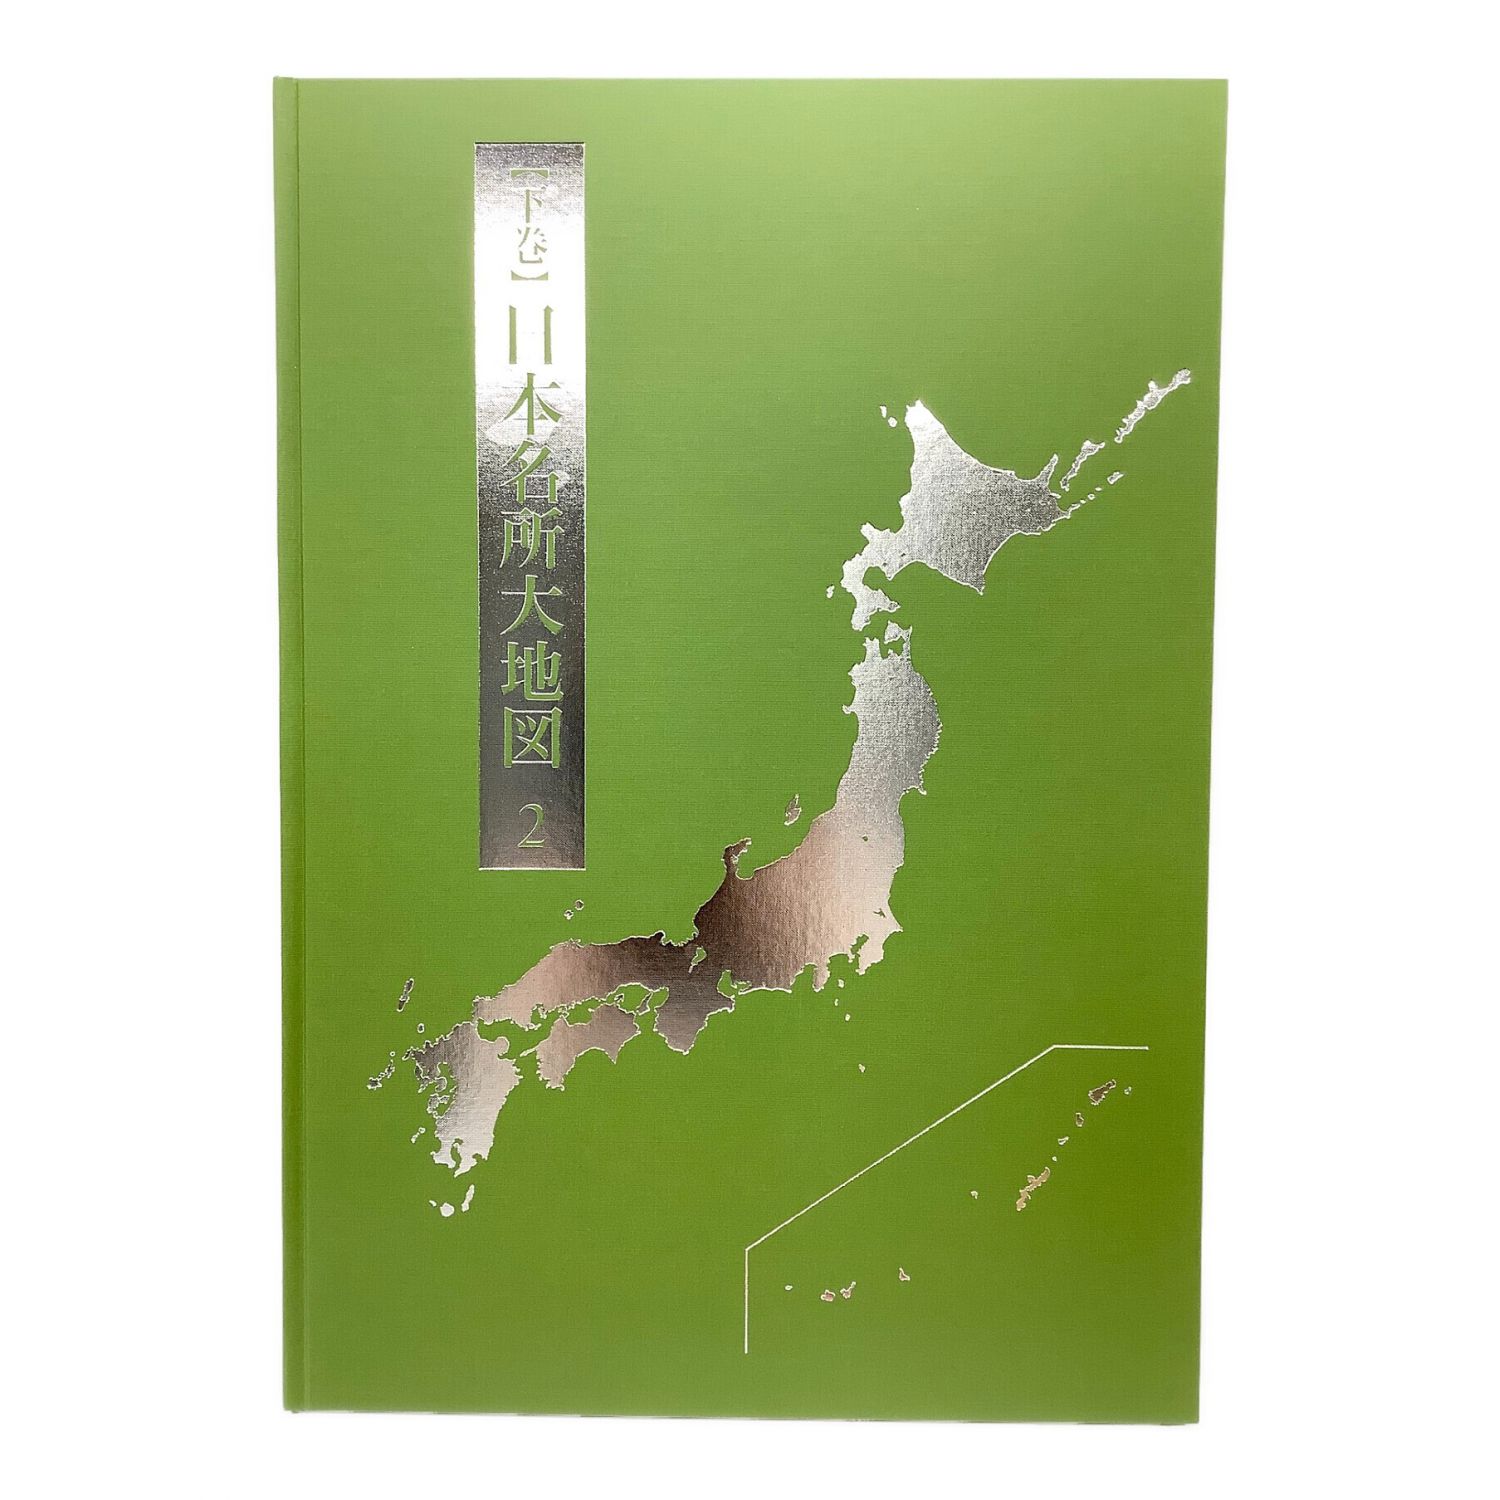 2020年版 日本大地図 ユーキャン - 地図・旅行ガイド